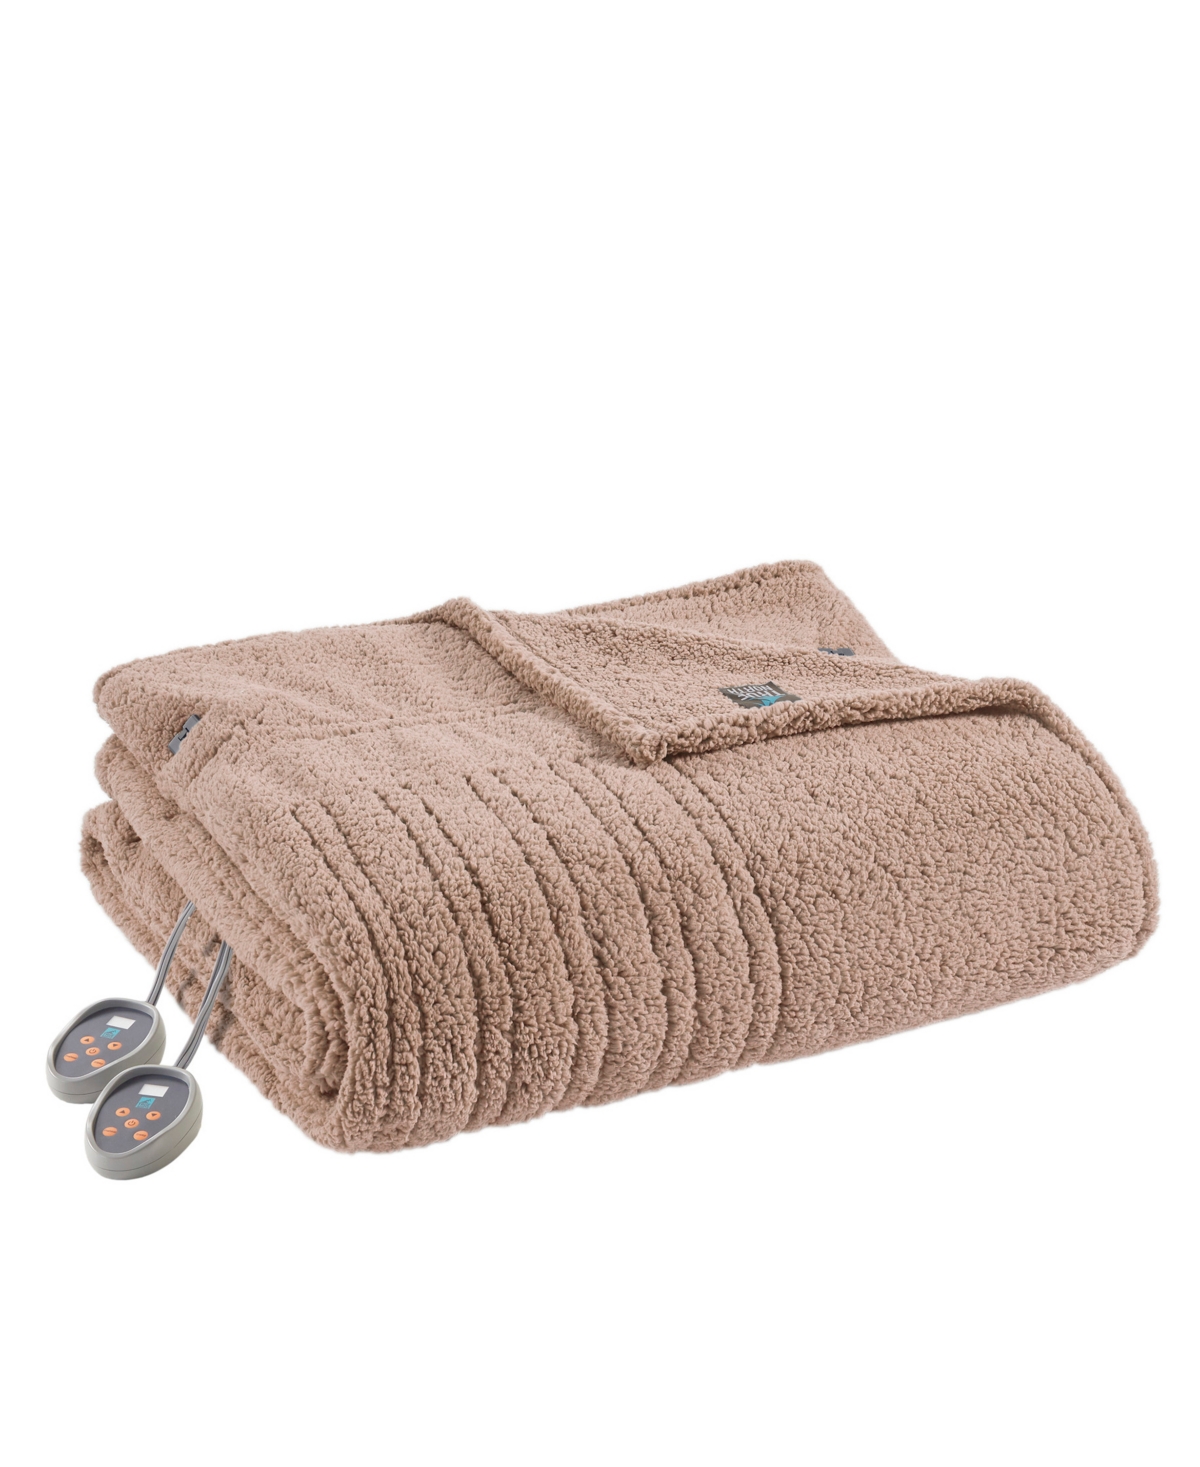 Sleep Philosophy Sherpa Heated Blanket, Twin In Brown